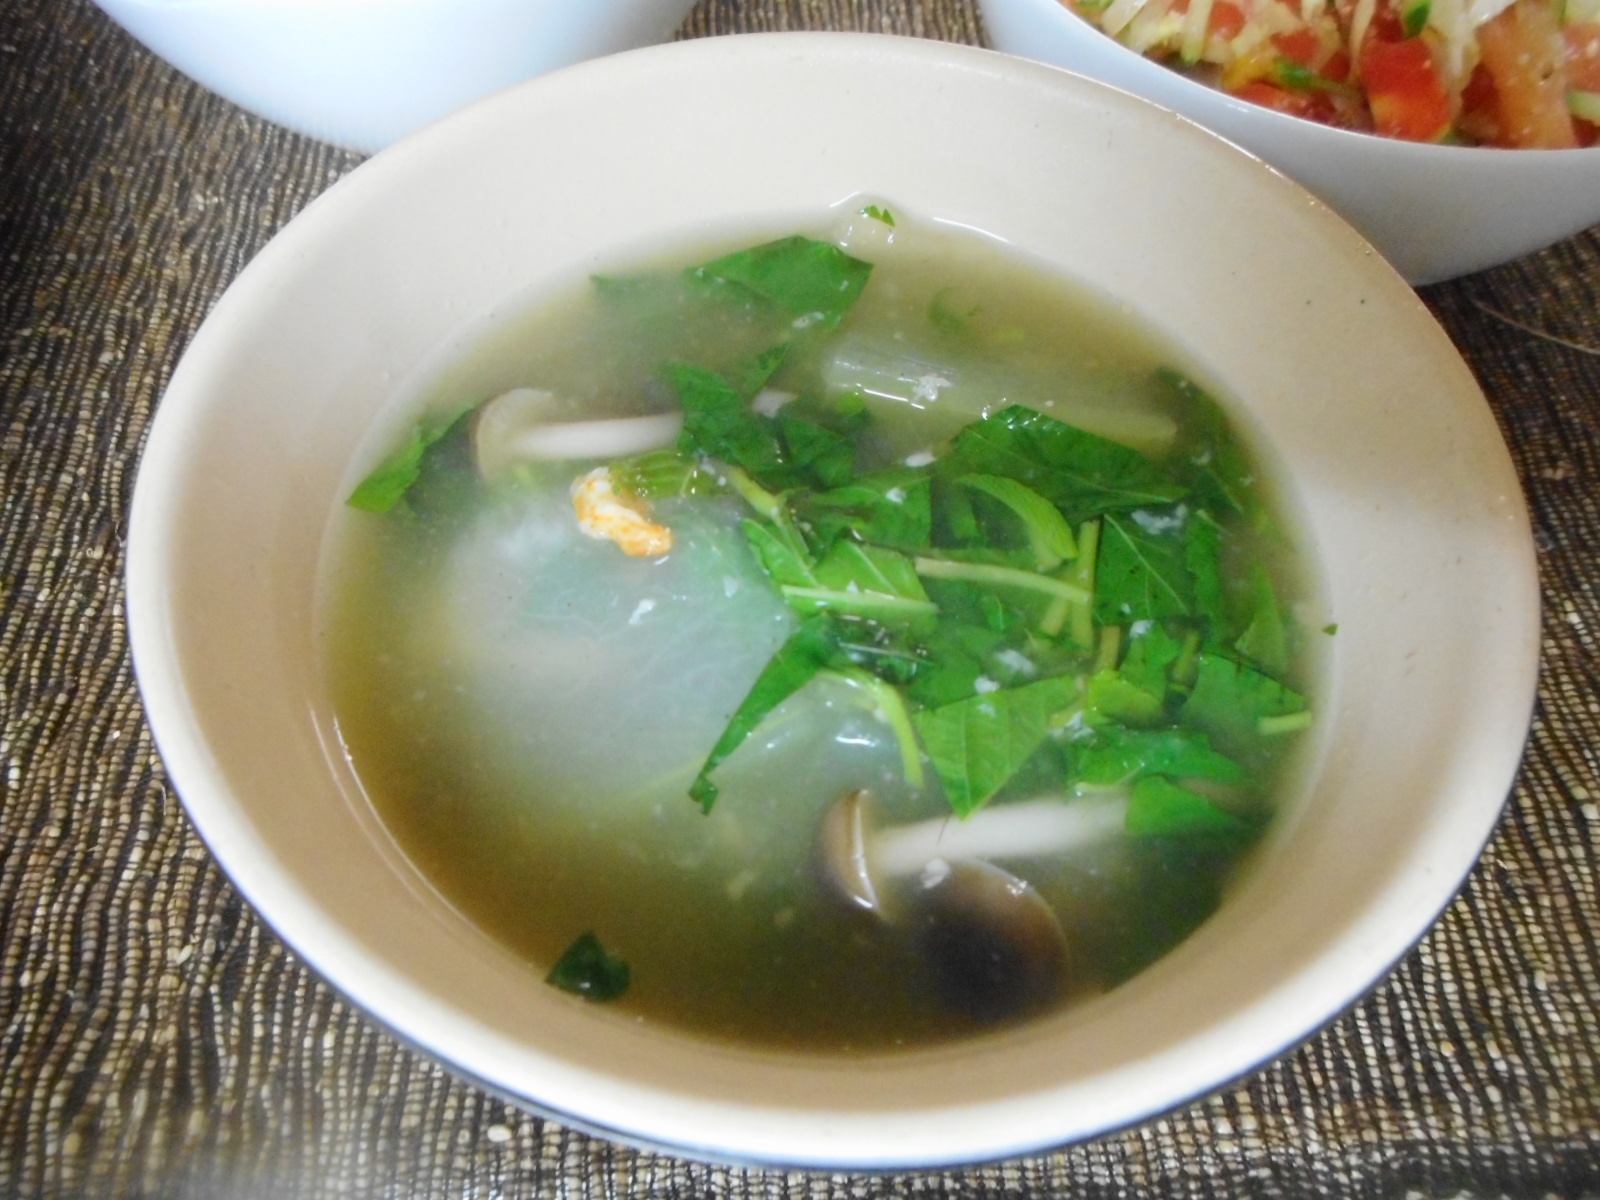 冬瓜とモロヘイヤの中華風スープ